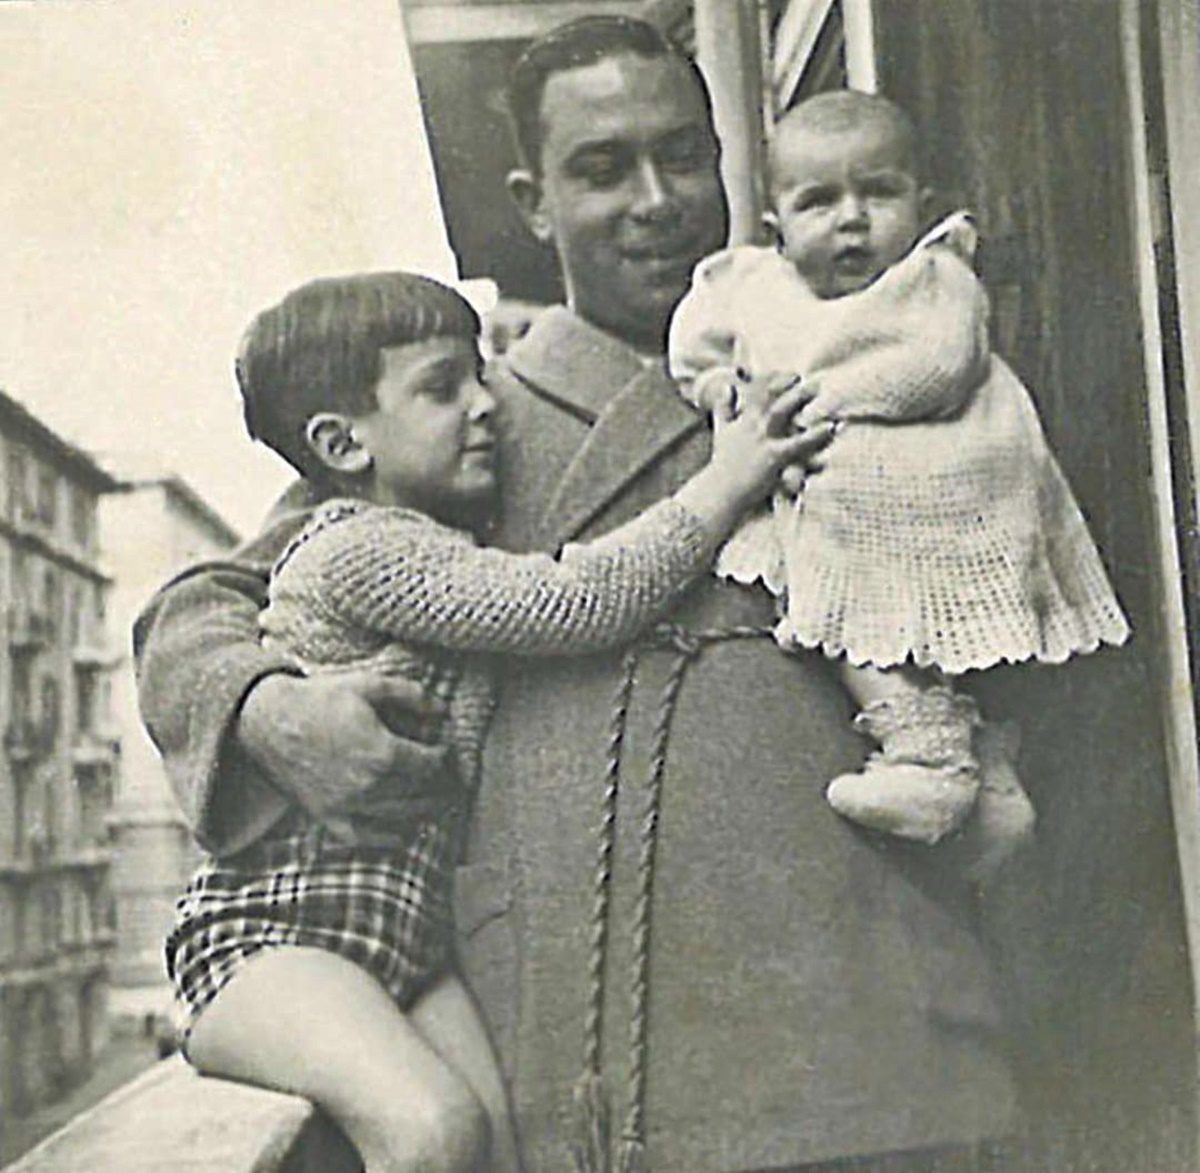 Megható fotó: Bud Spencer édesapja karjában látható gyerekként